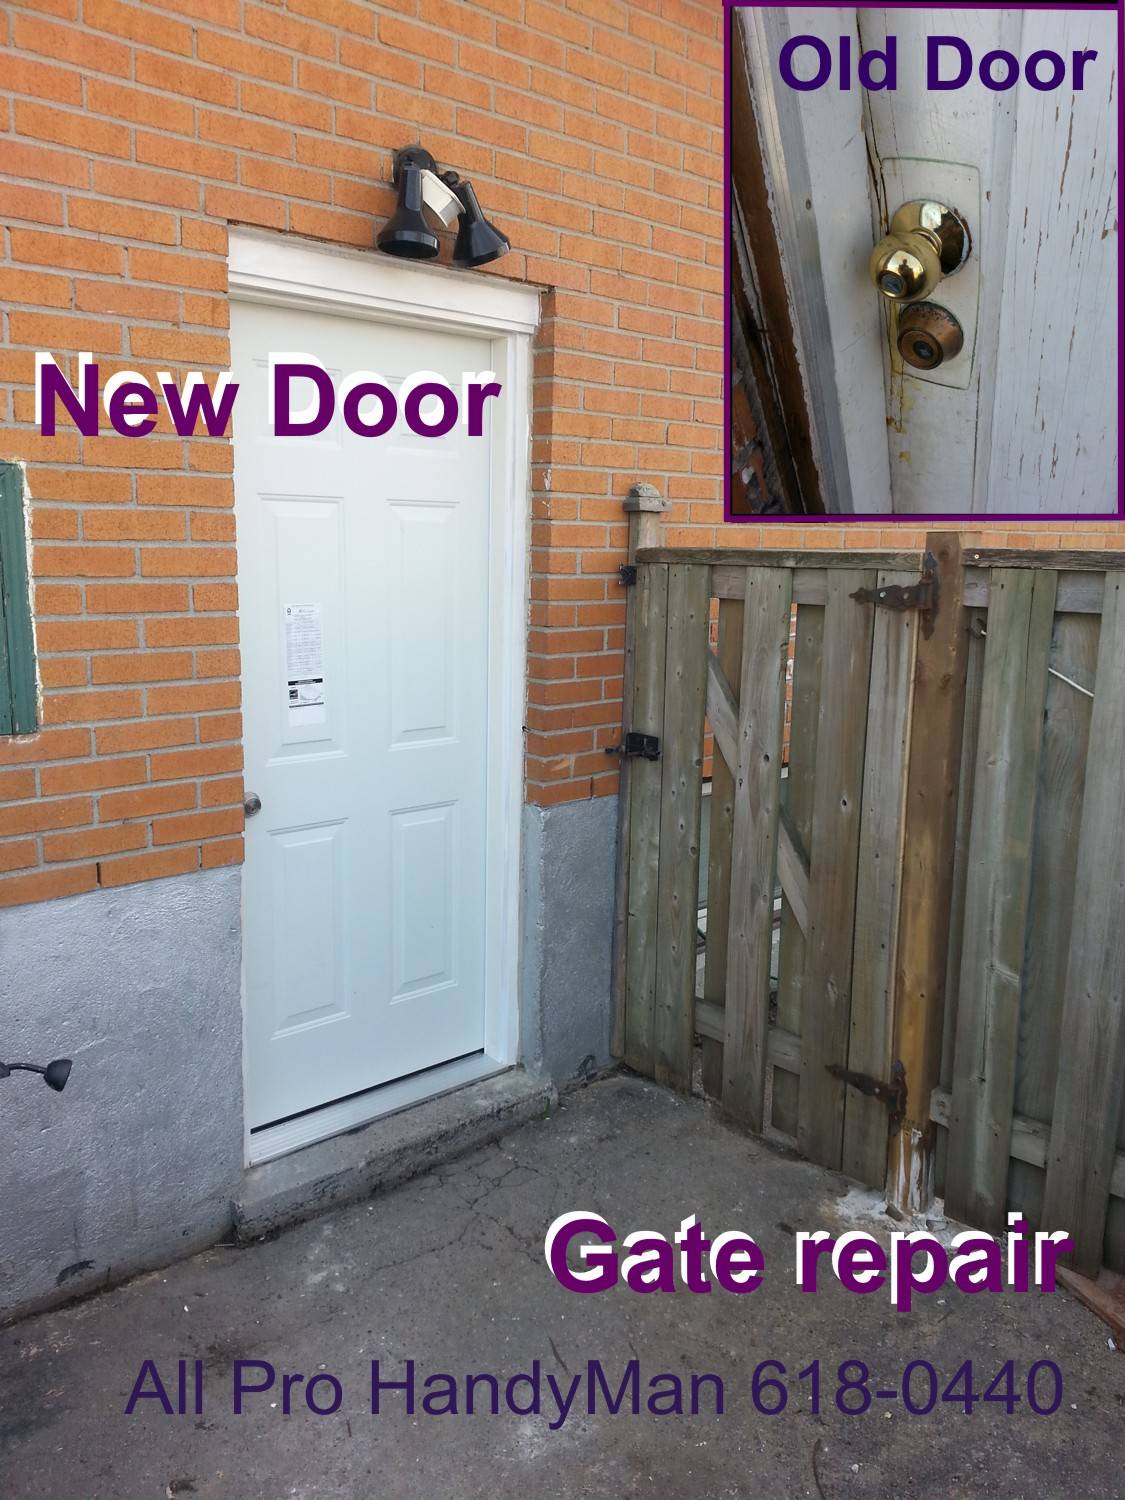 New Door & Gate repair